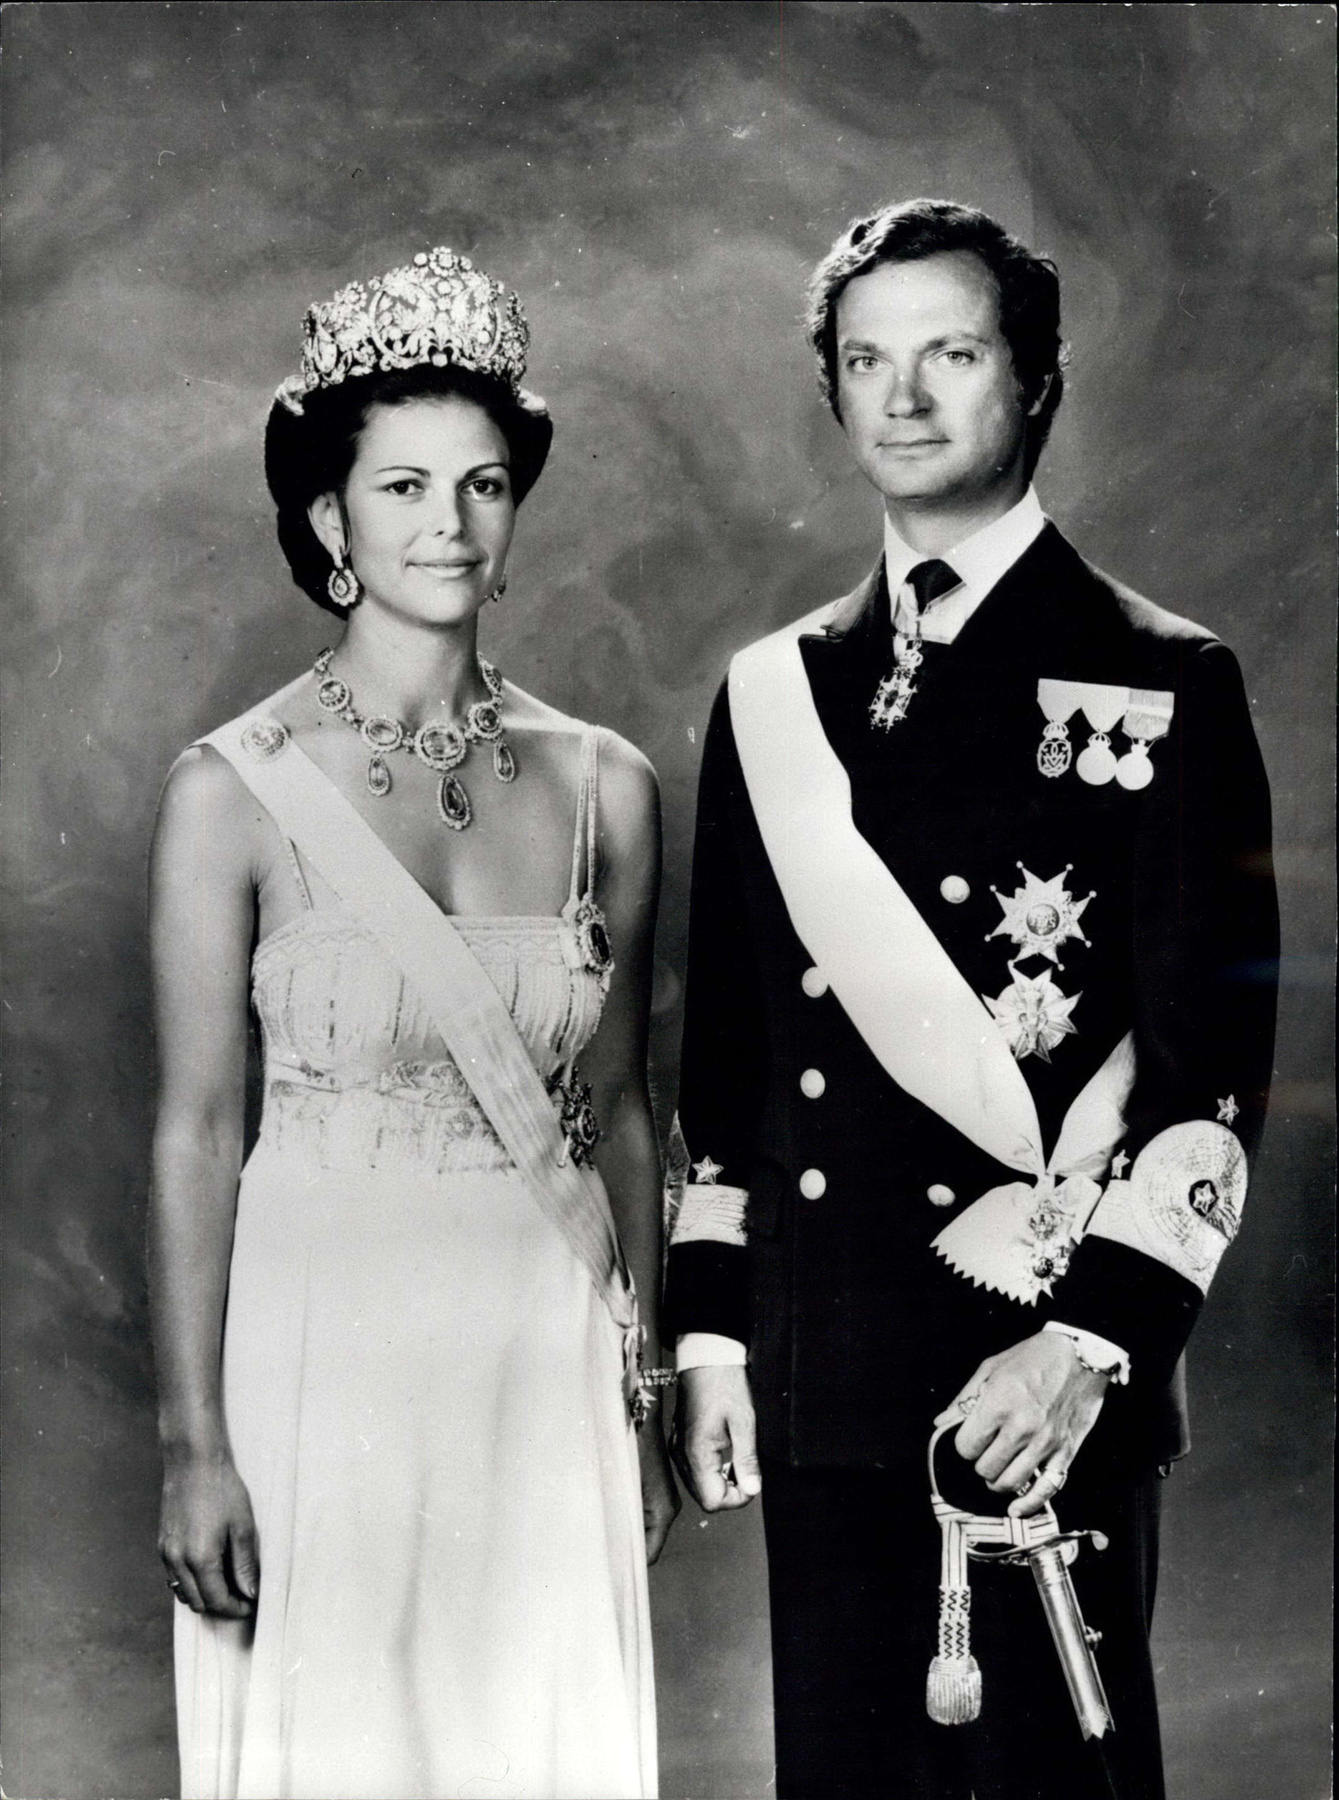 Alajos herceg és Zsófia bajor hercegnő a svéd királyi esküvőn 2010-ben.